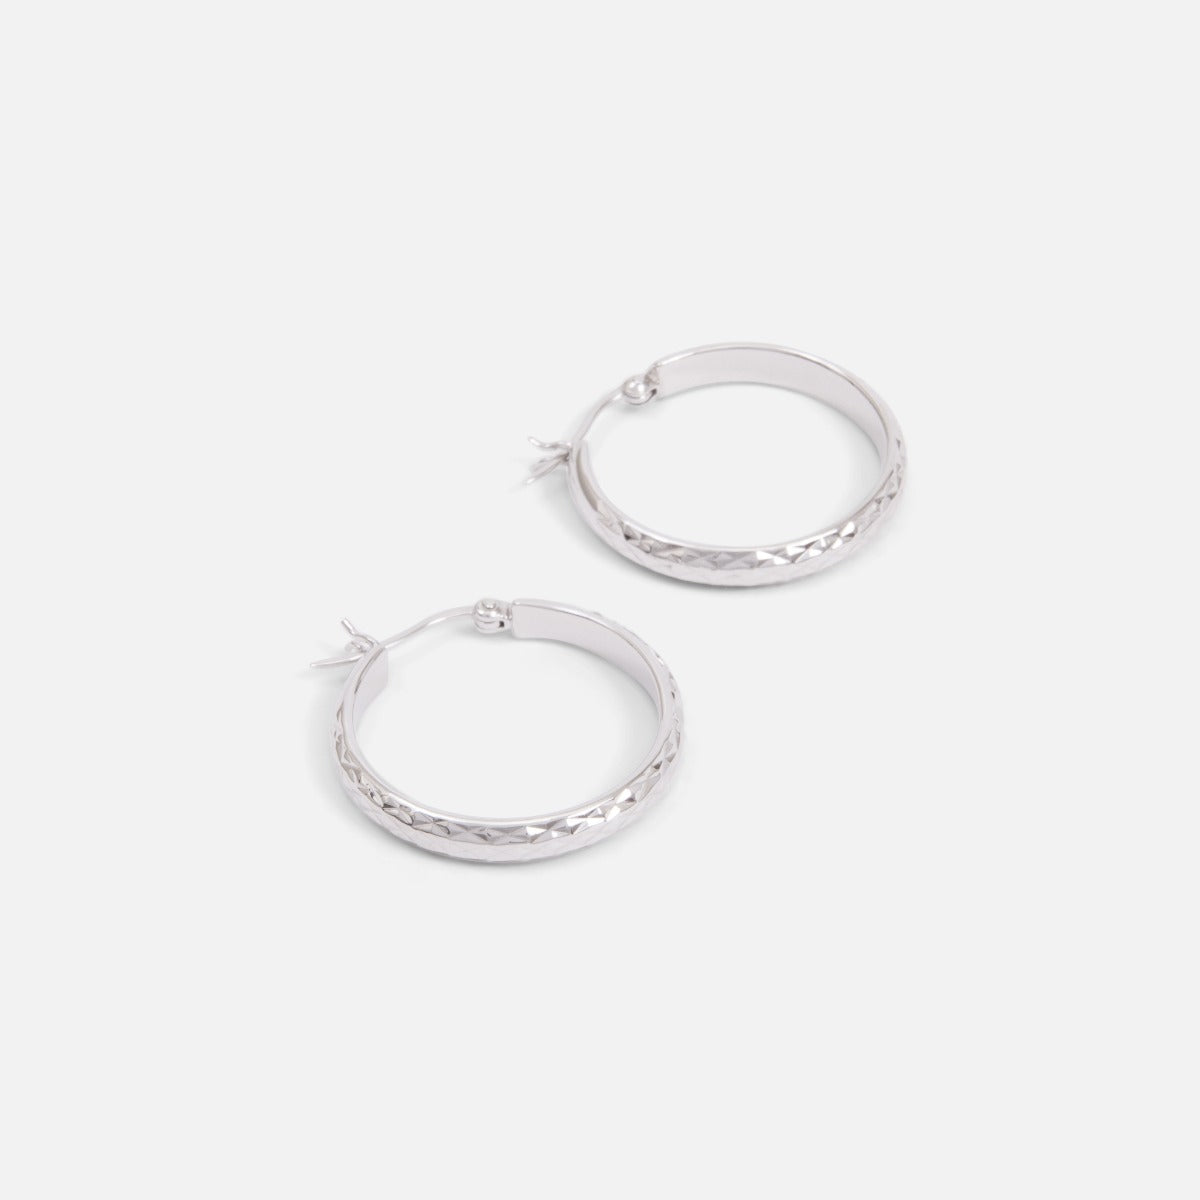 Facetted sterling silver hoop earrings